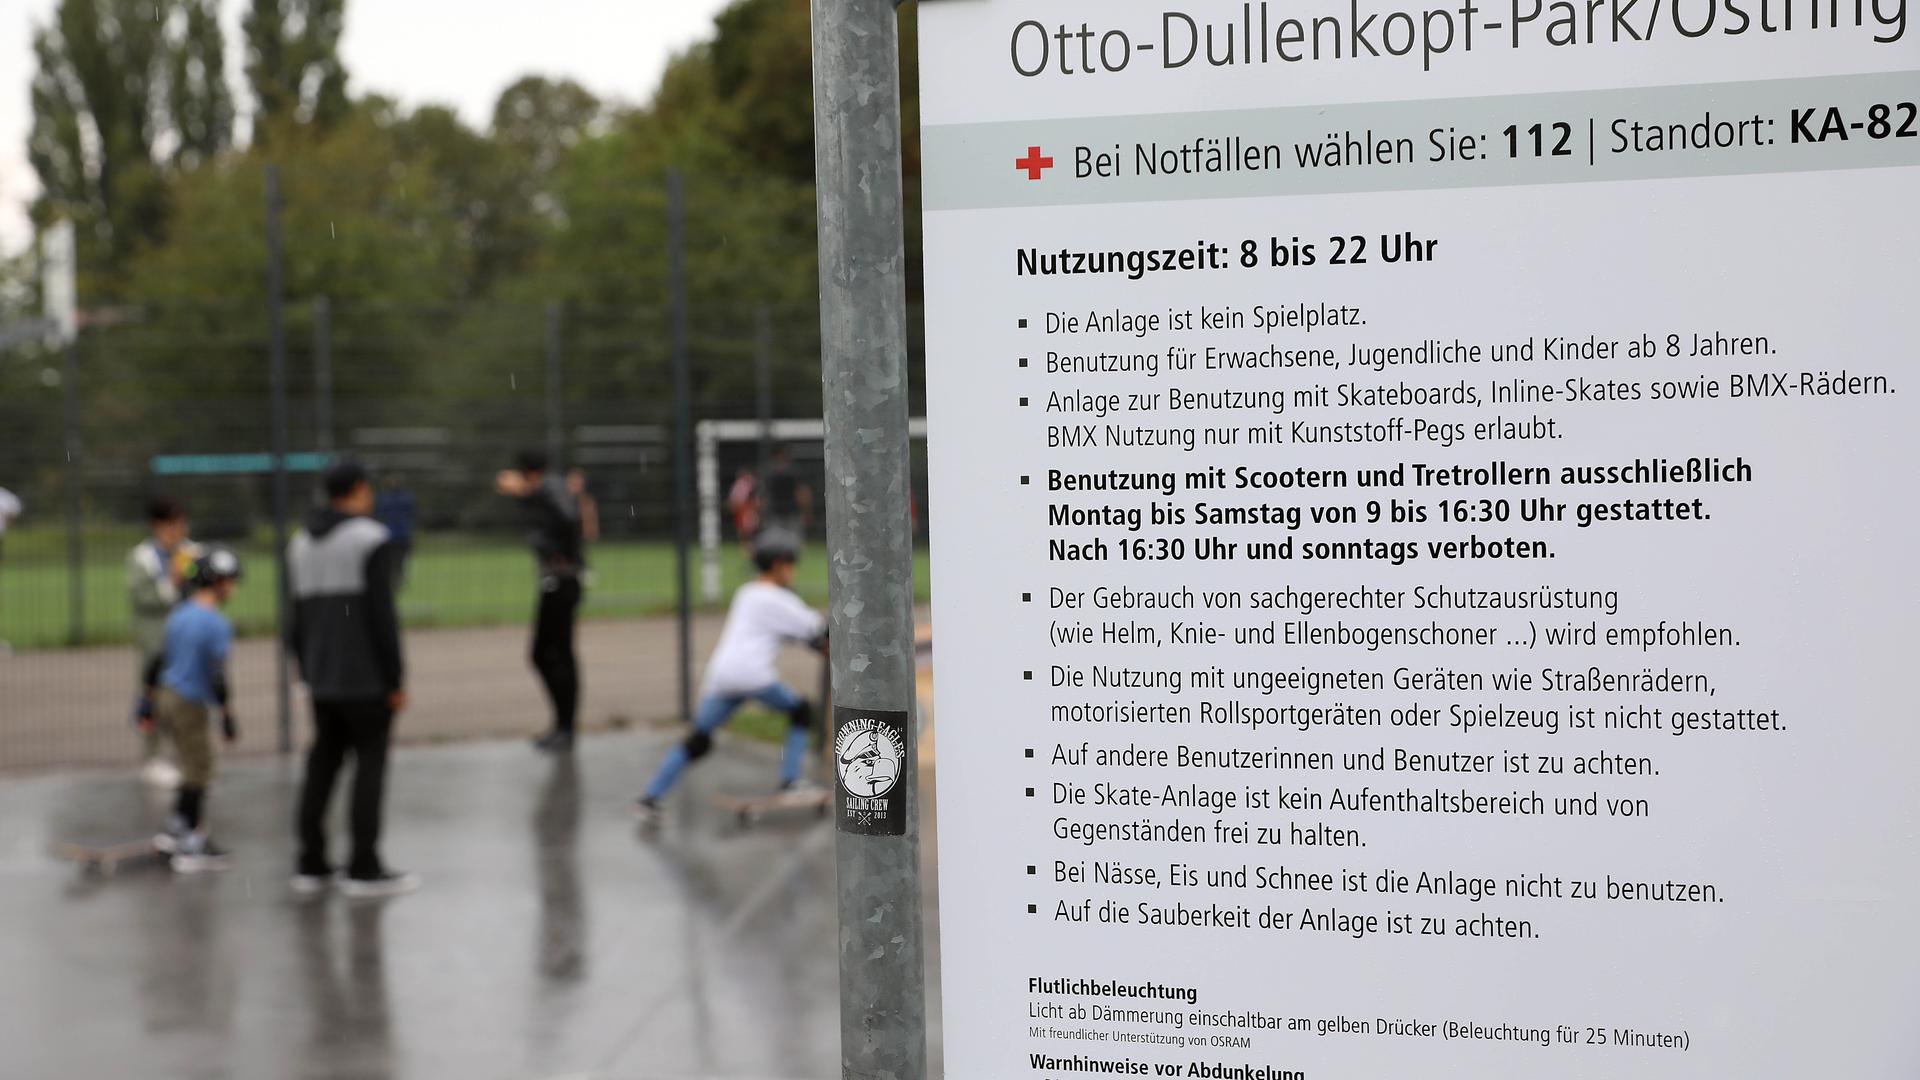 In der Skateranlage im Otto-Dullenkopf Park herrscht zu bestimmten Zeiten Rollerverbot.